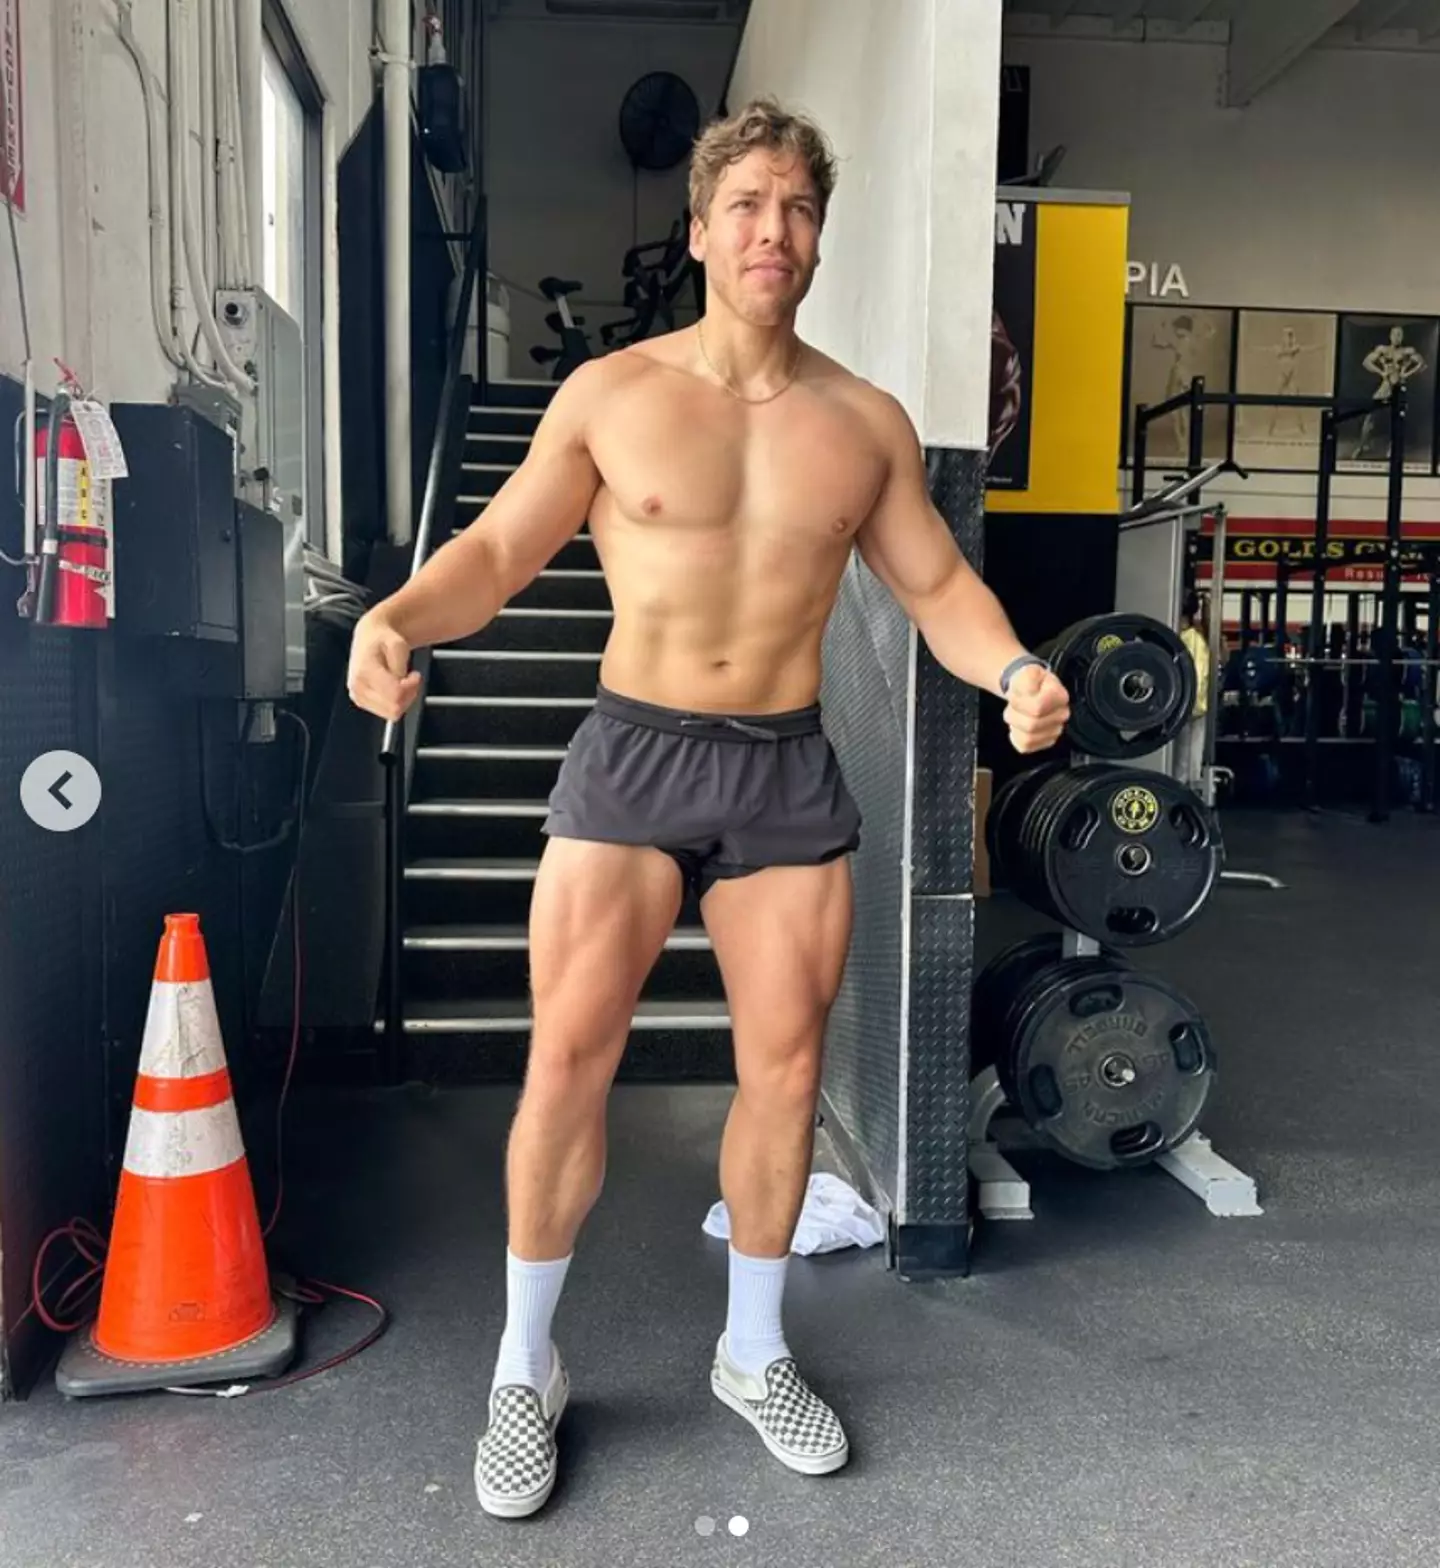 Baena showed off his impressive physique on Instagram.